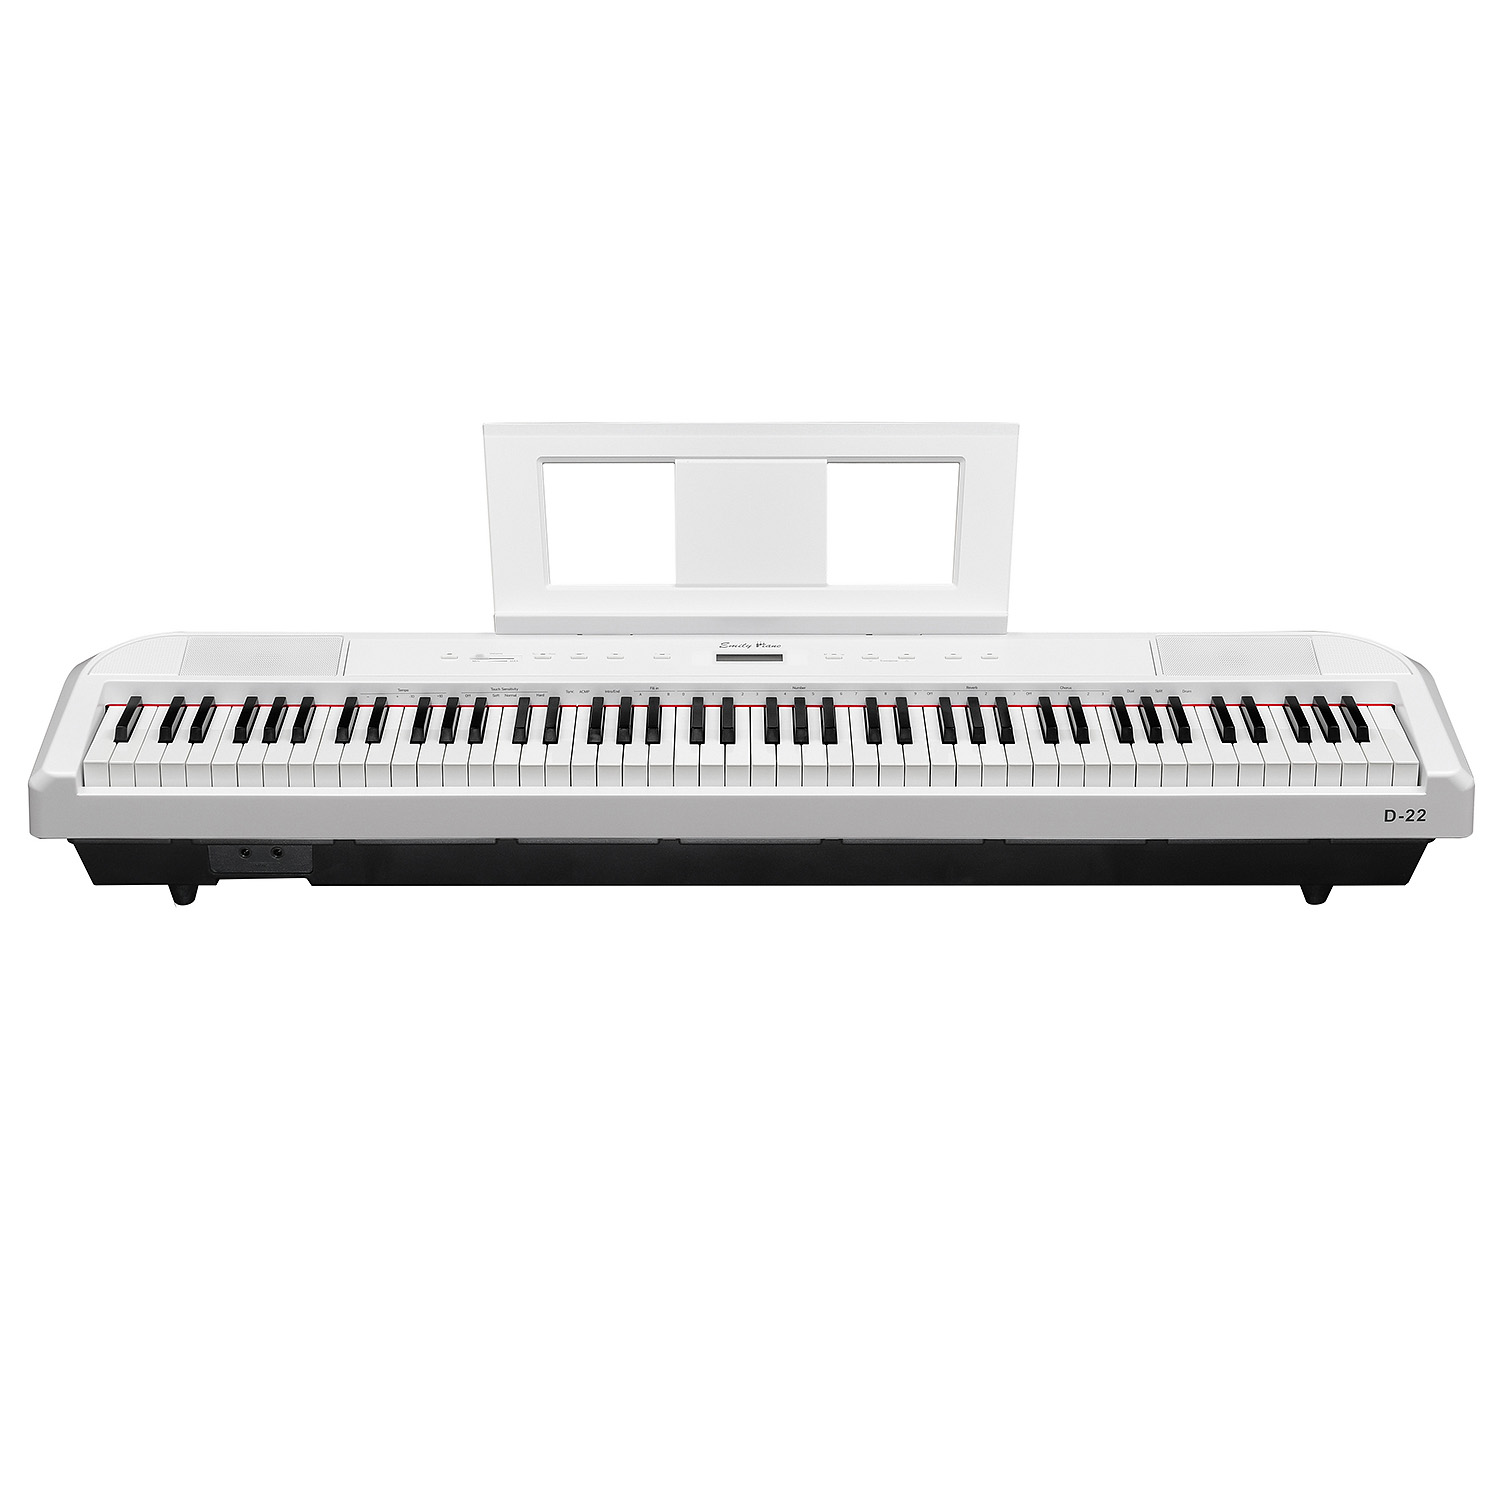 Цифровое фортепиано EMILY PIANO D-22 BK 88 полноразмерных клавиш фортепианного типа